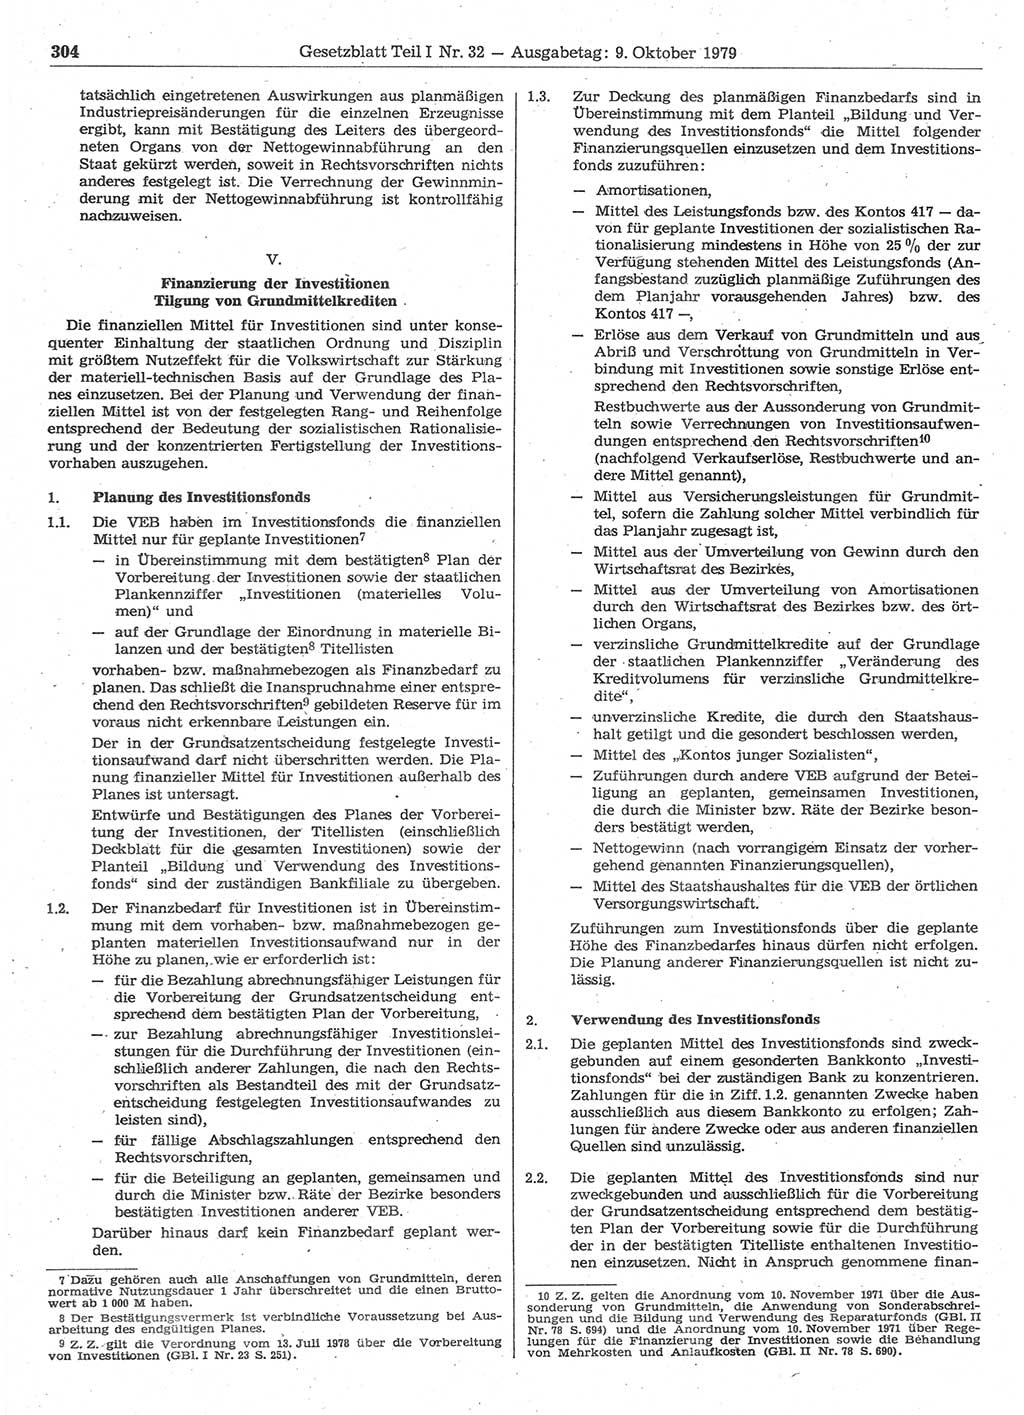 Gesetzblatt (GBl.) der Deutschen Demokratischen Republik (DDR) Teil Ⅰ 1979, Seite 304 (GBl. DDR Ⅰ 1979, S. 304)